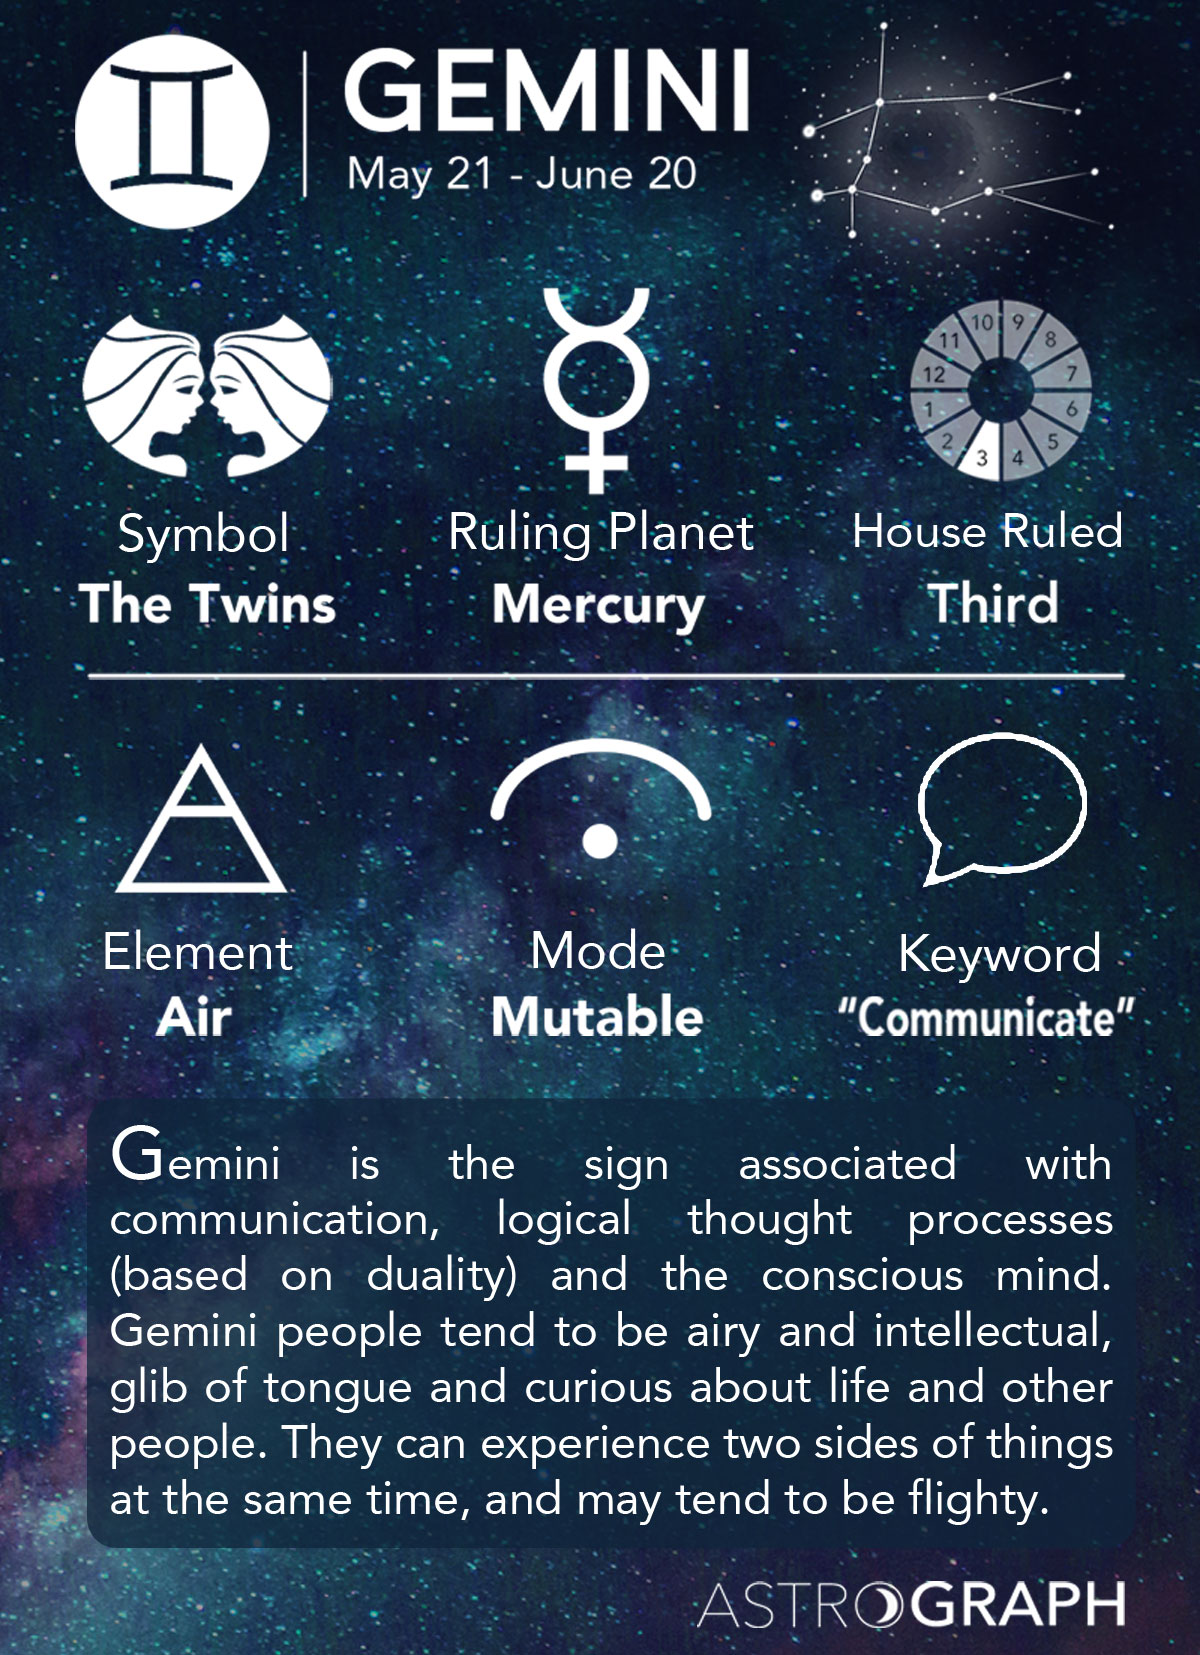 gemini sign symbol text